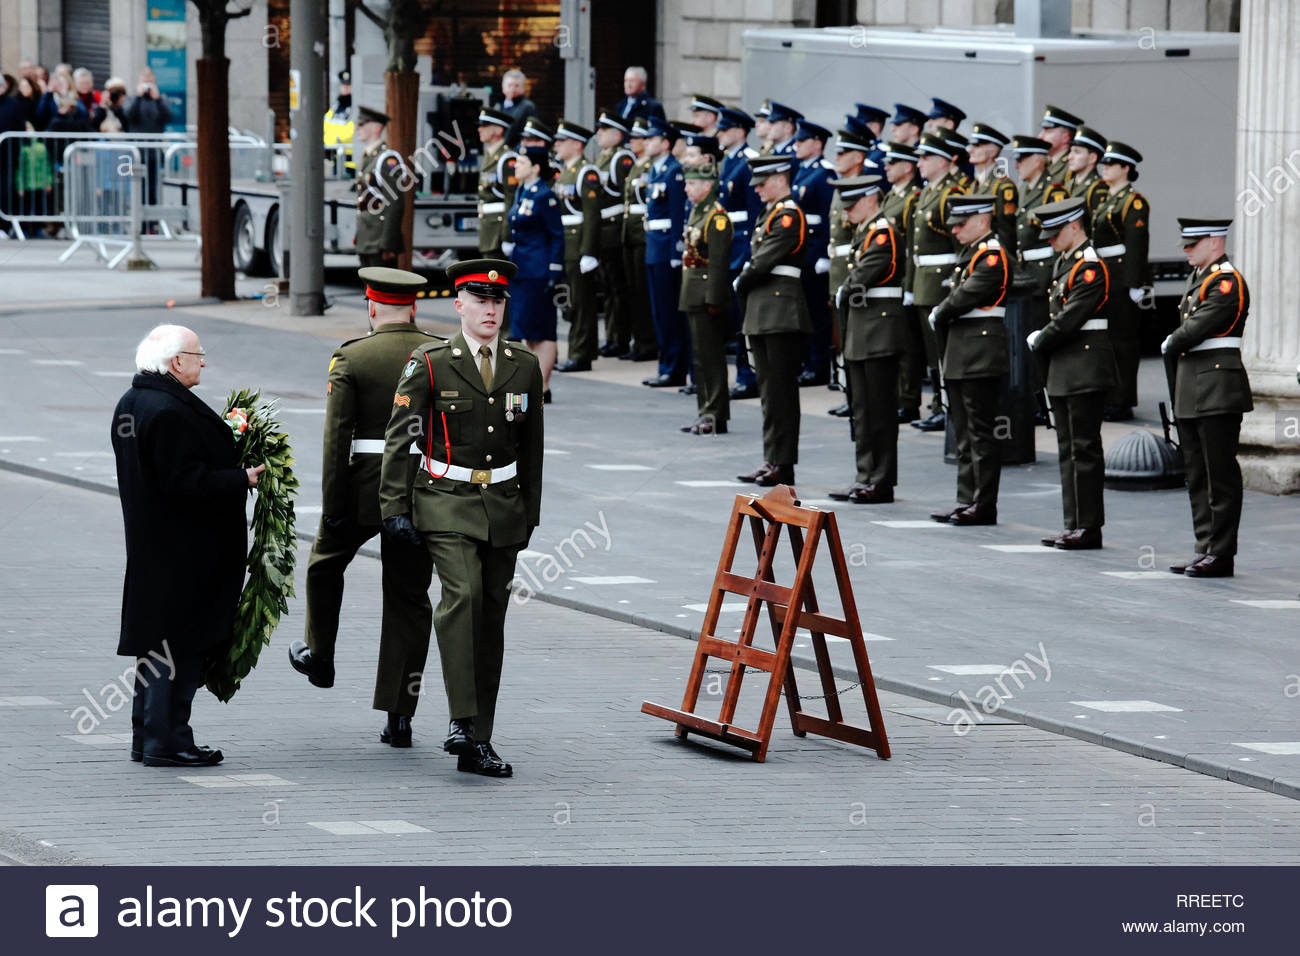 Michael D. Higgins, président de l'Irlande, se prépare à déposer une couronne de fleurs en face de l'objet Stratégie de groupe, à Dublin, à une cérémonie de commémoration, pour le 1916 à la hausse. Banque D'Images